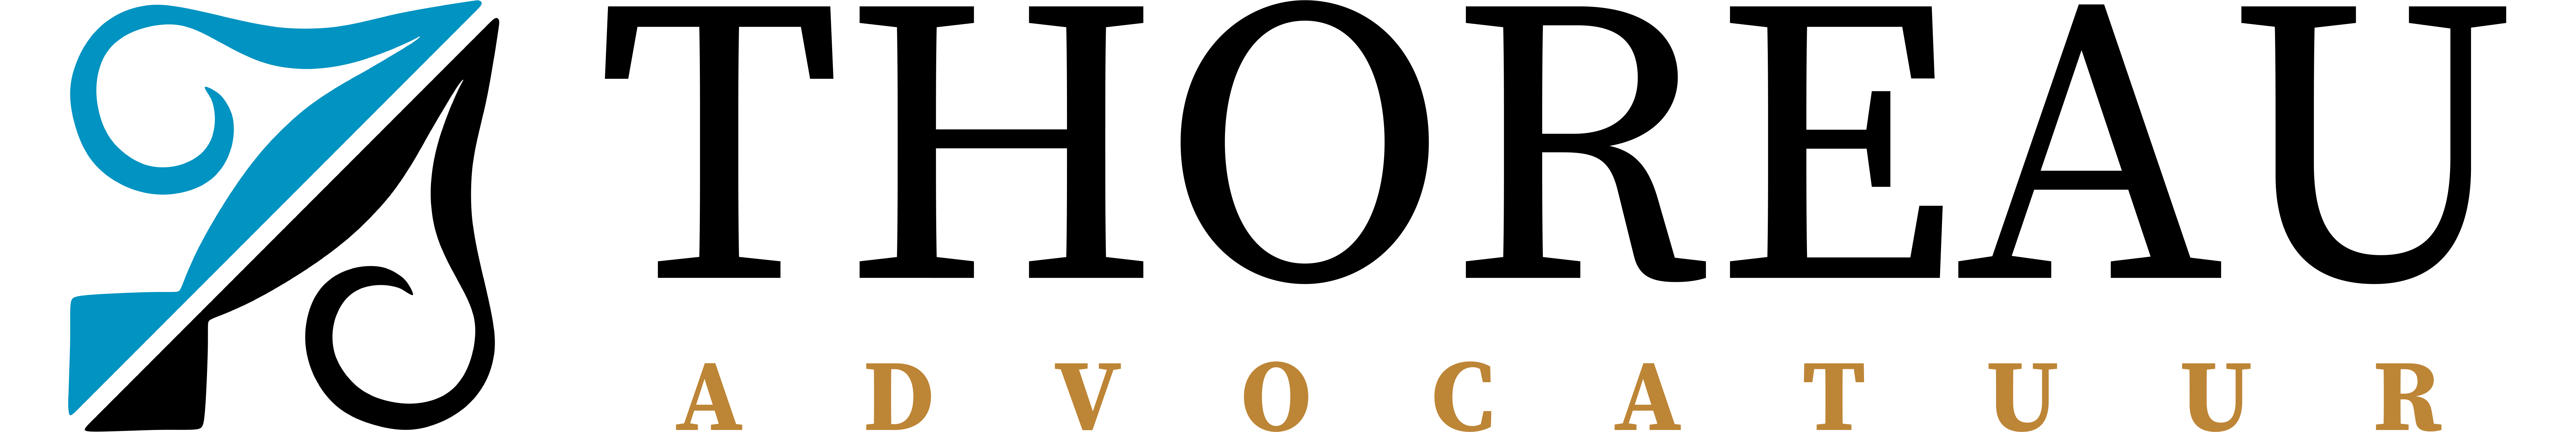 Thoreau Advocatuur logo transparant 2